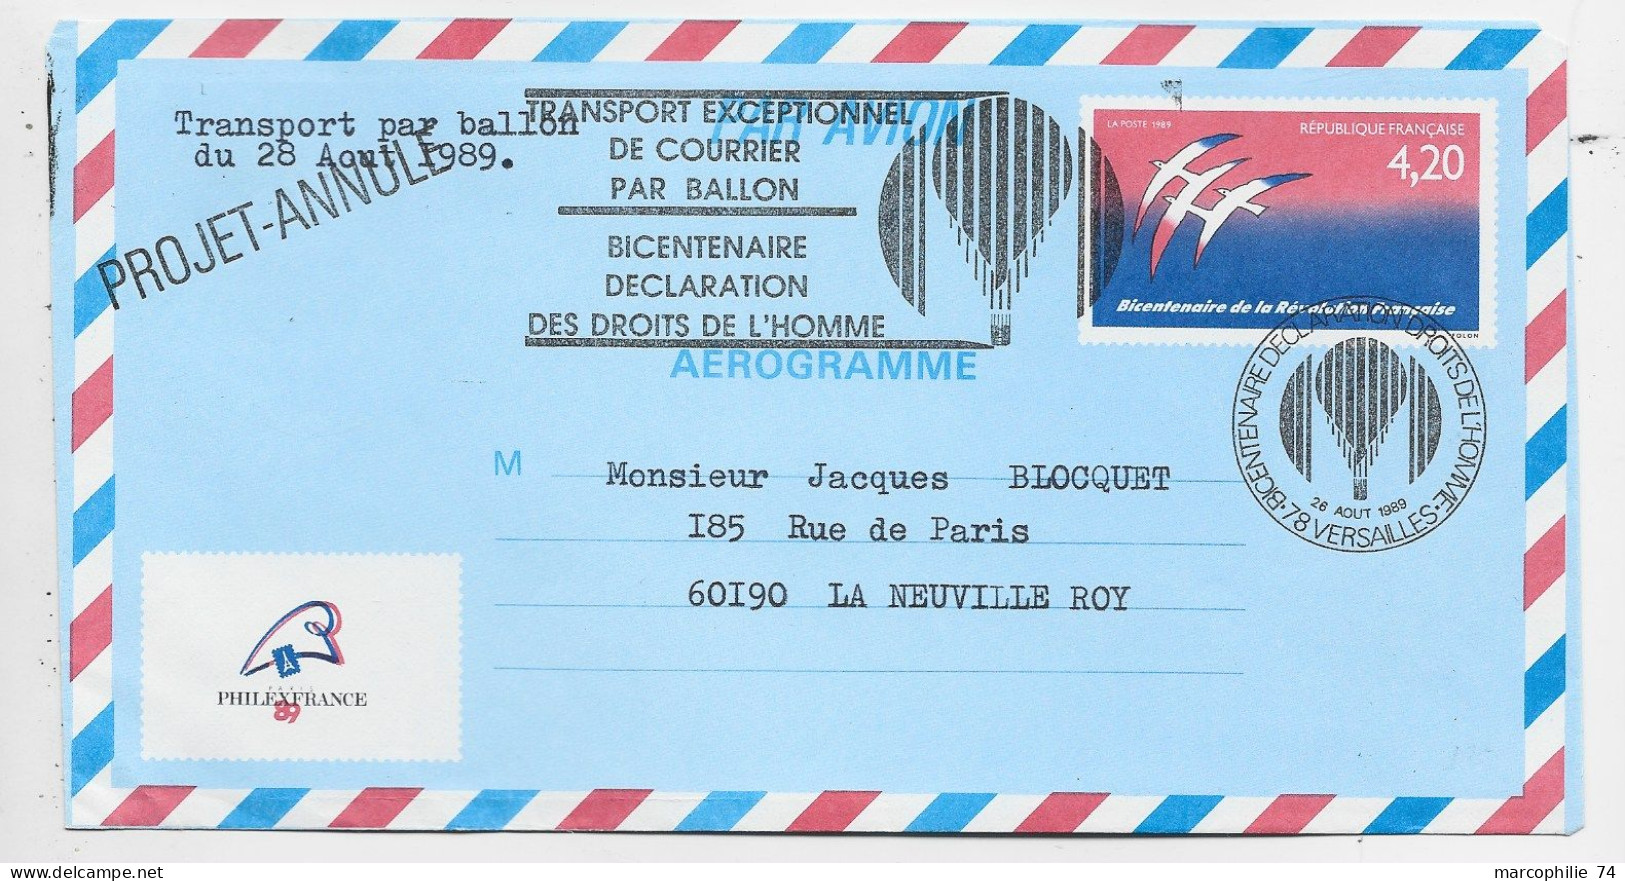 FRANCE AEROGRAMME 4.20 FOLON ENVELOPPE COVER TRANSPORT EXCEPTIONNEL PAR BALLON 1989 PHILEX PROJET ANNULE - Aerogramme